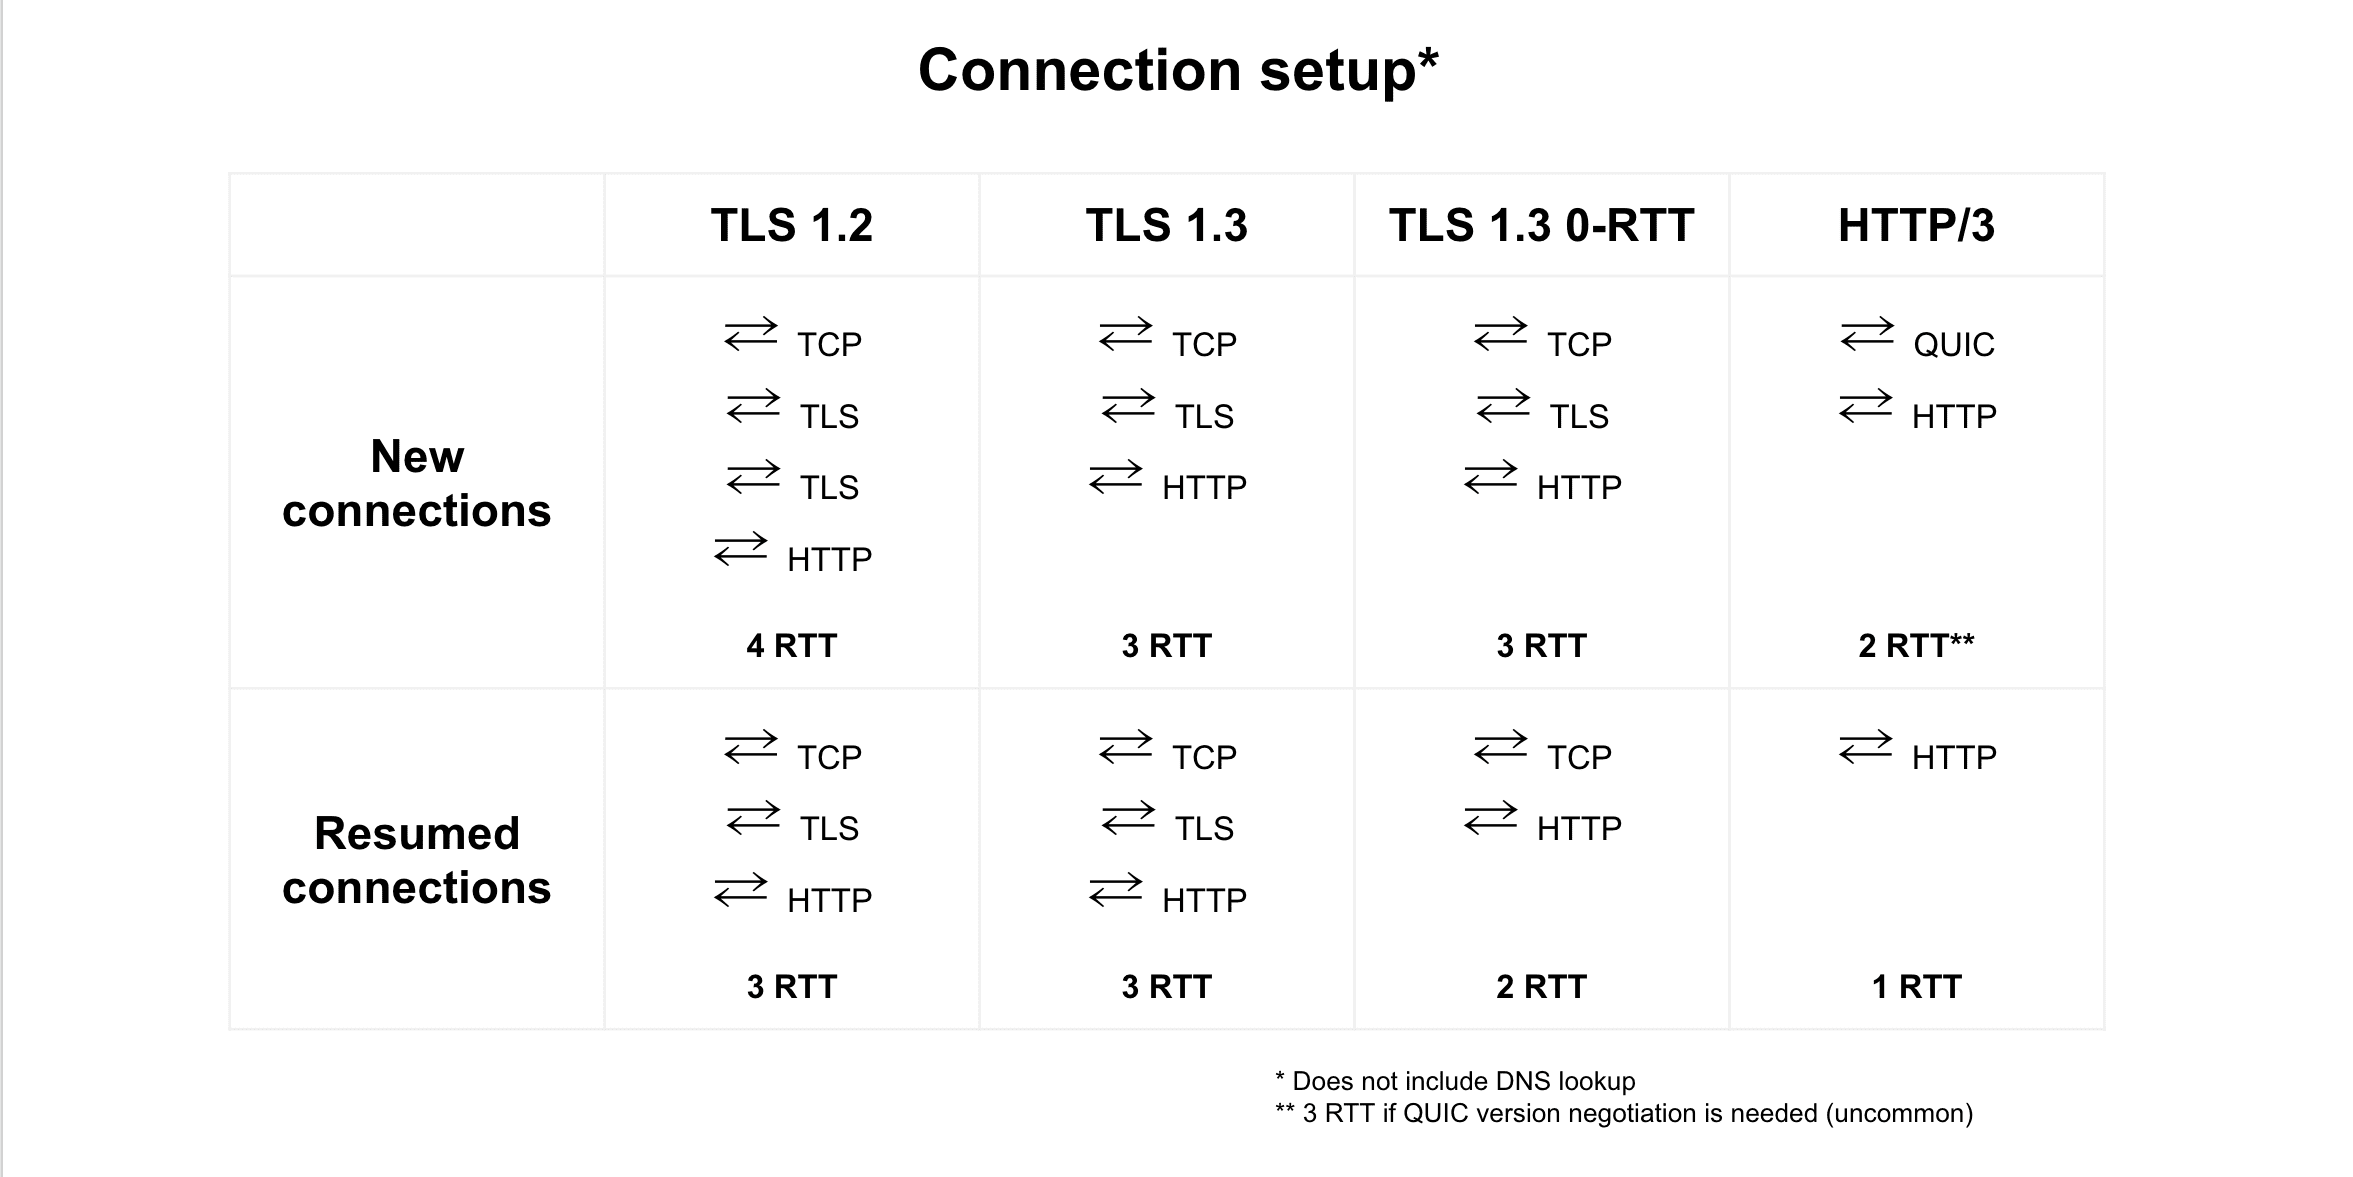 TLS 1.2, TLS 1.3, TLS 1.3 0-आरटीटी, और एचटीटीपी/3 के बीच कनेक्शन फिर से शुरू किए जाने की तुलना